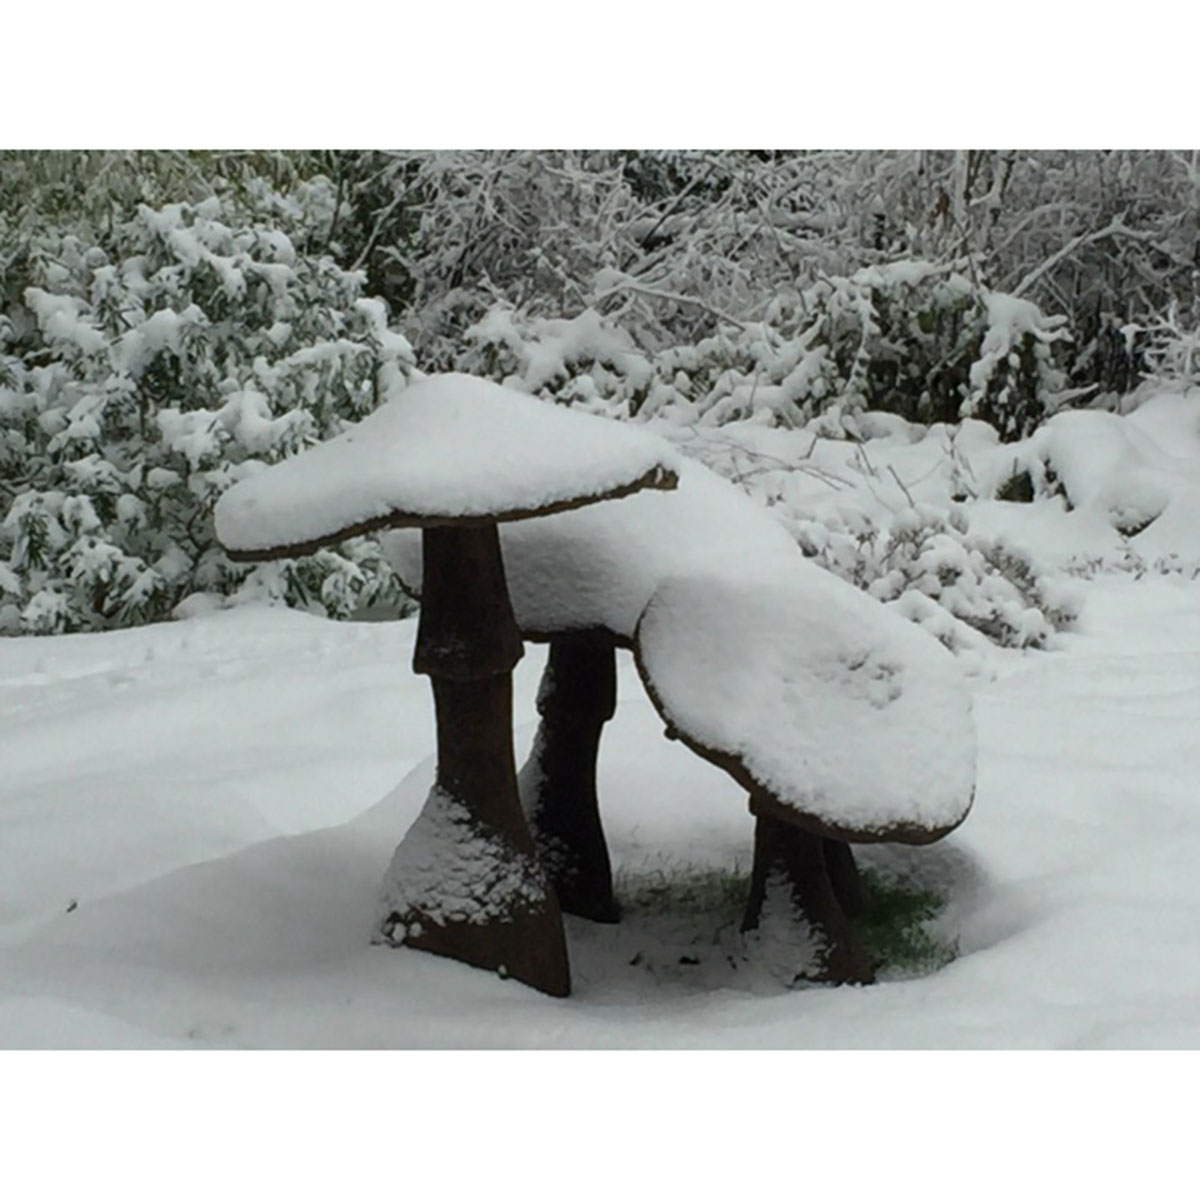 Garden-Mushrooms-in-snow-LR.jpg